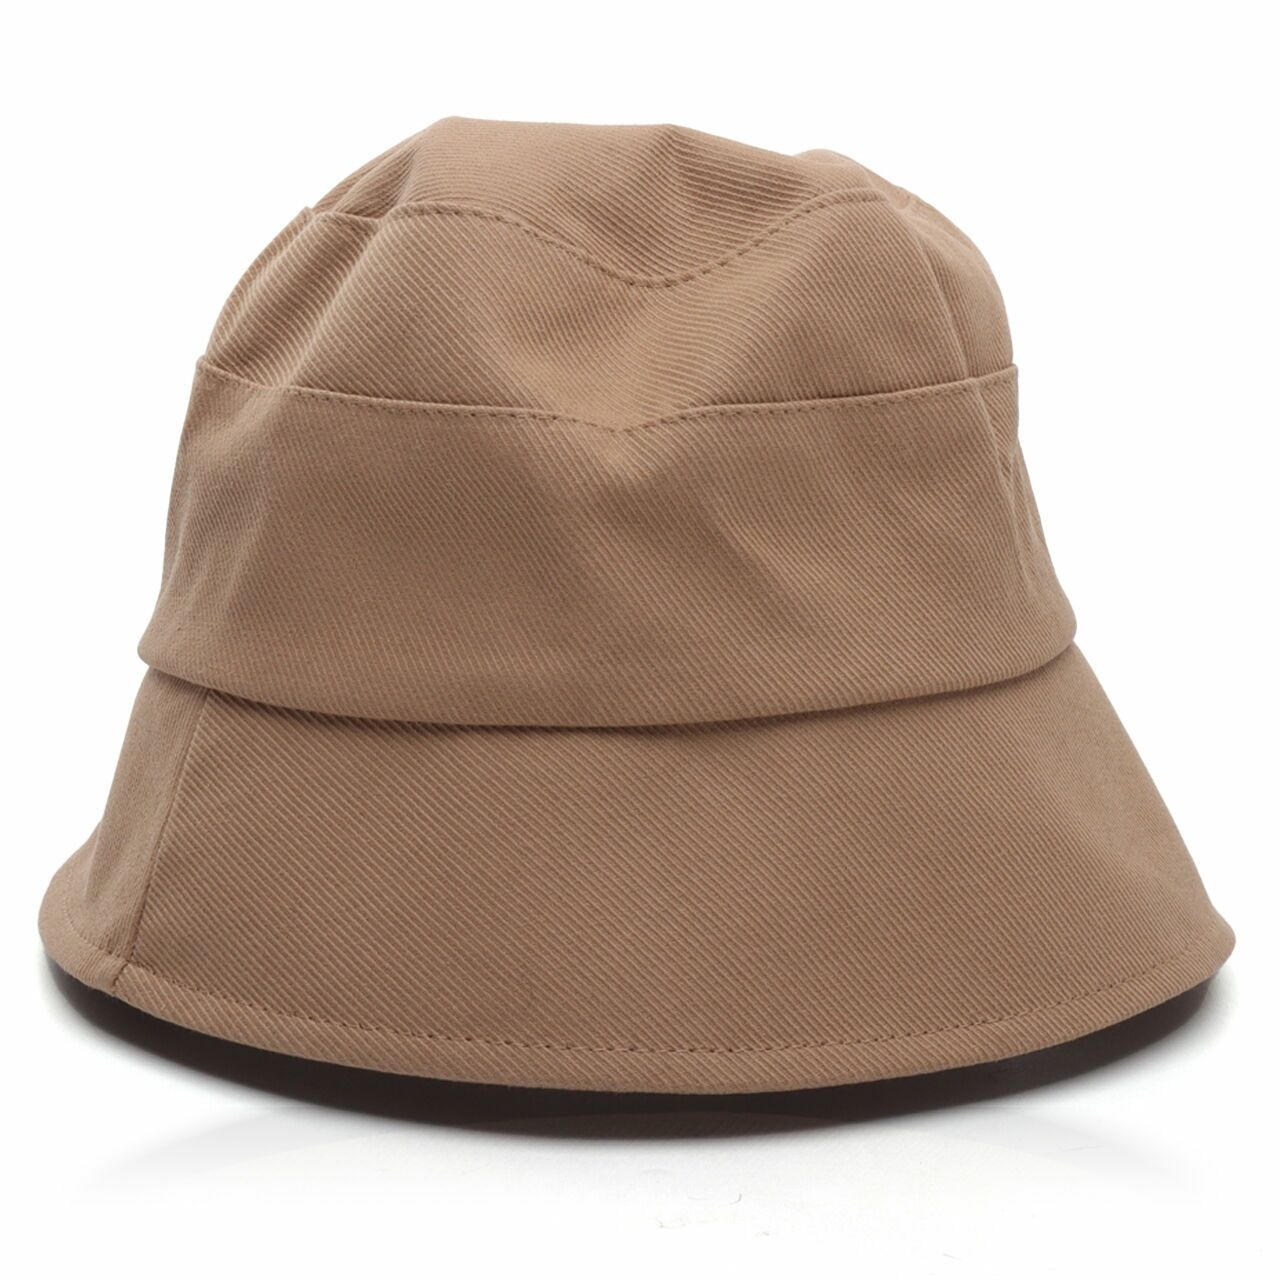 Hava Brown Bucket Hats